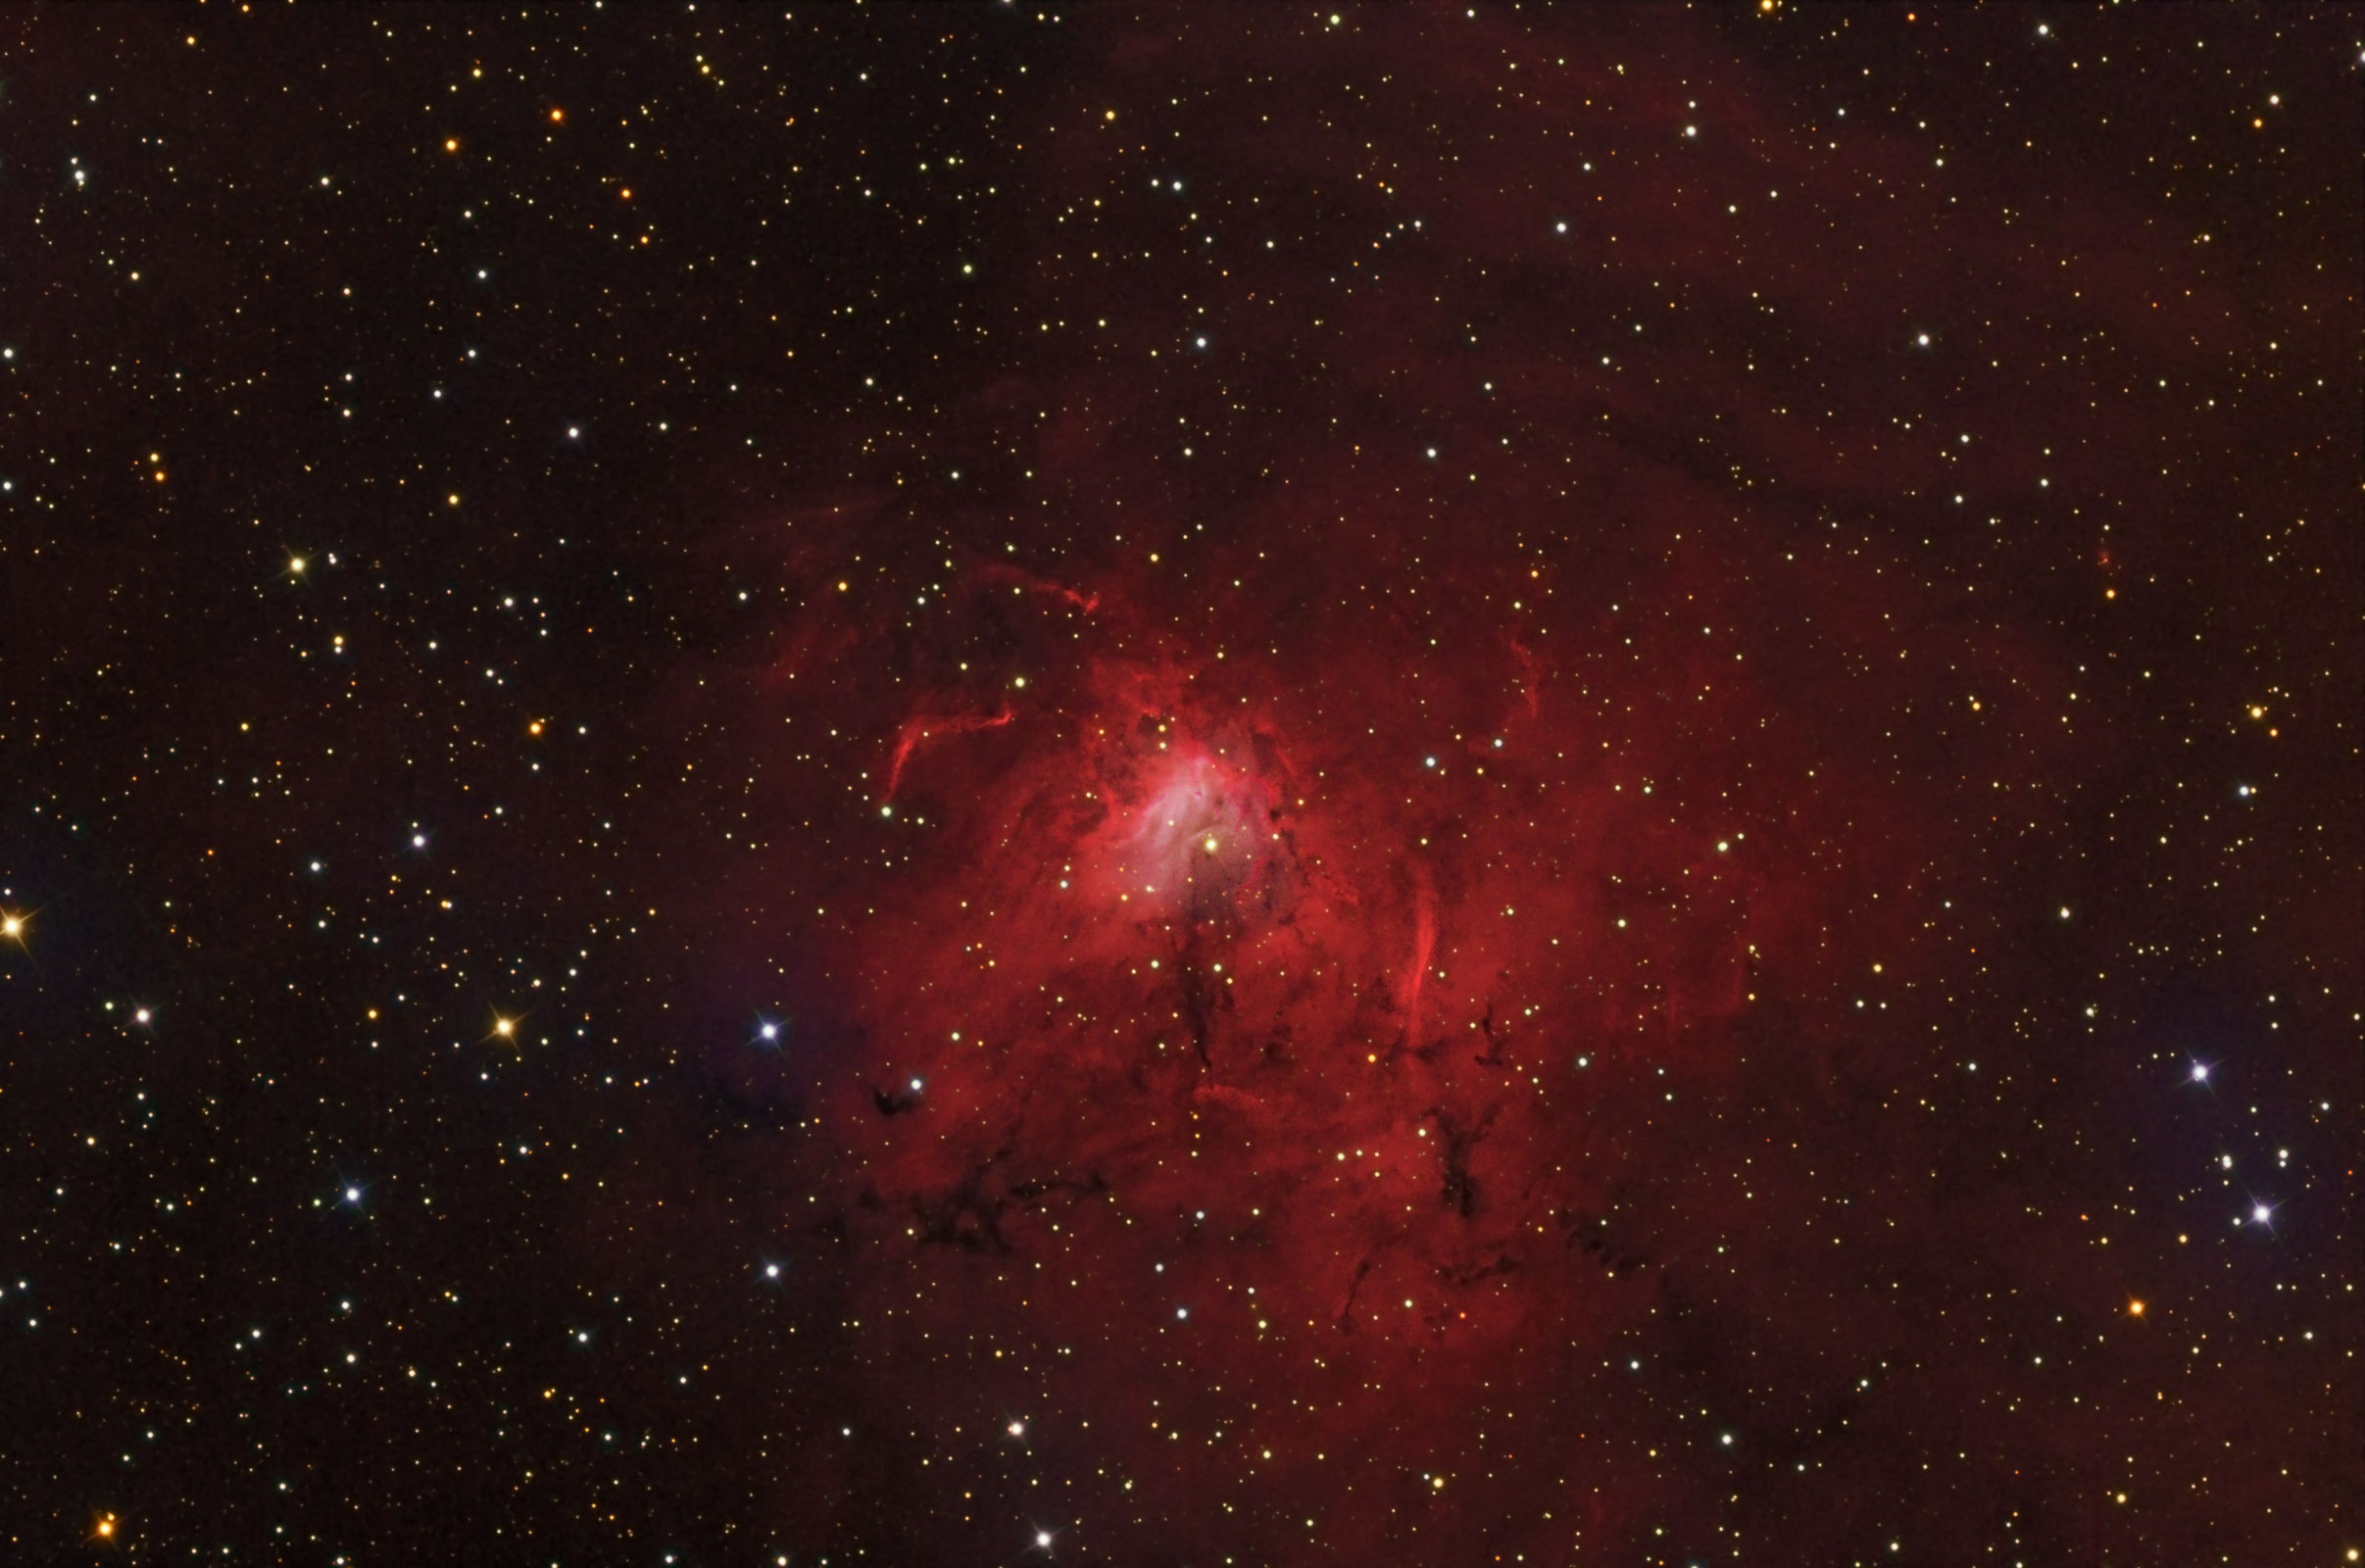 NGC 1491 / Sharpless 206